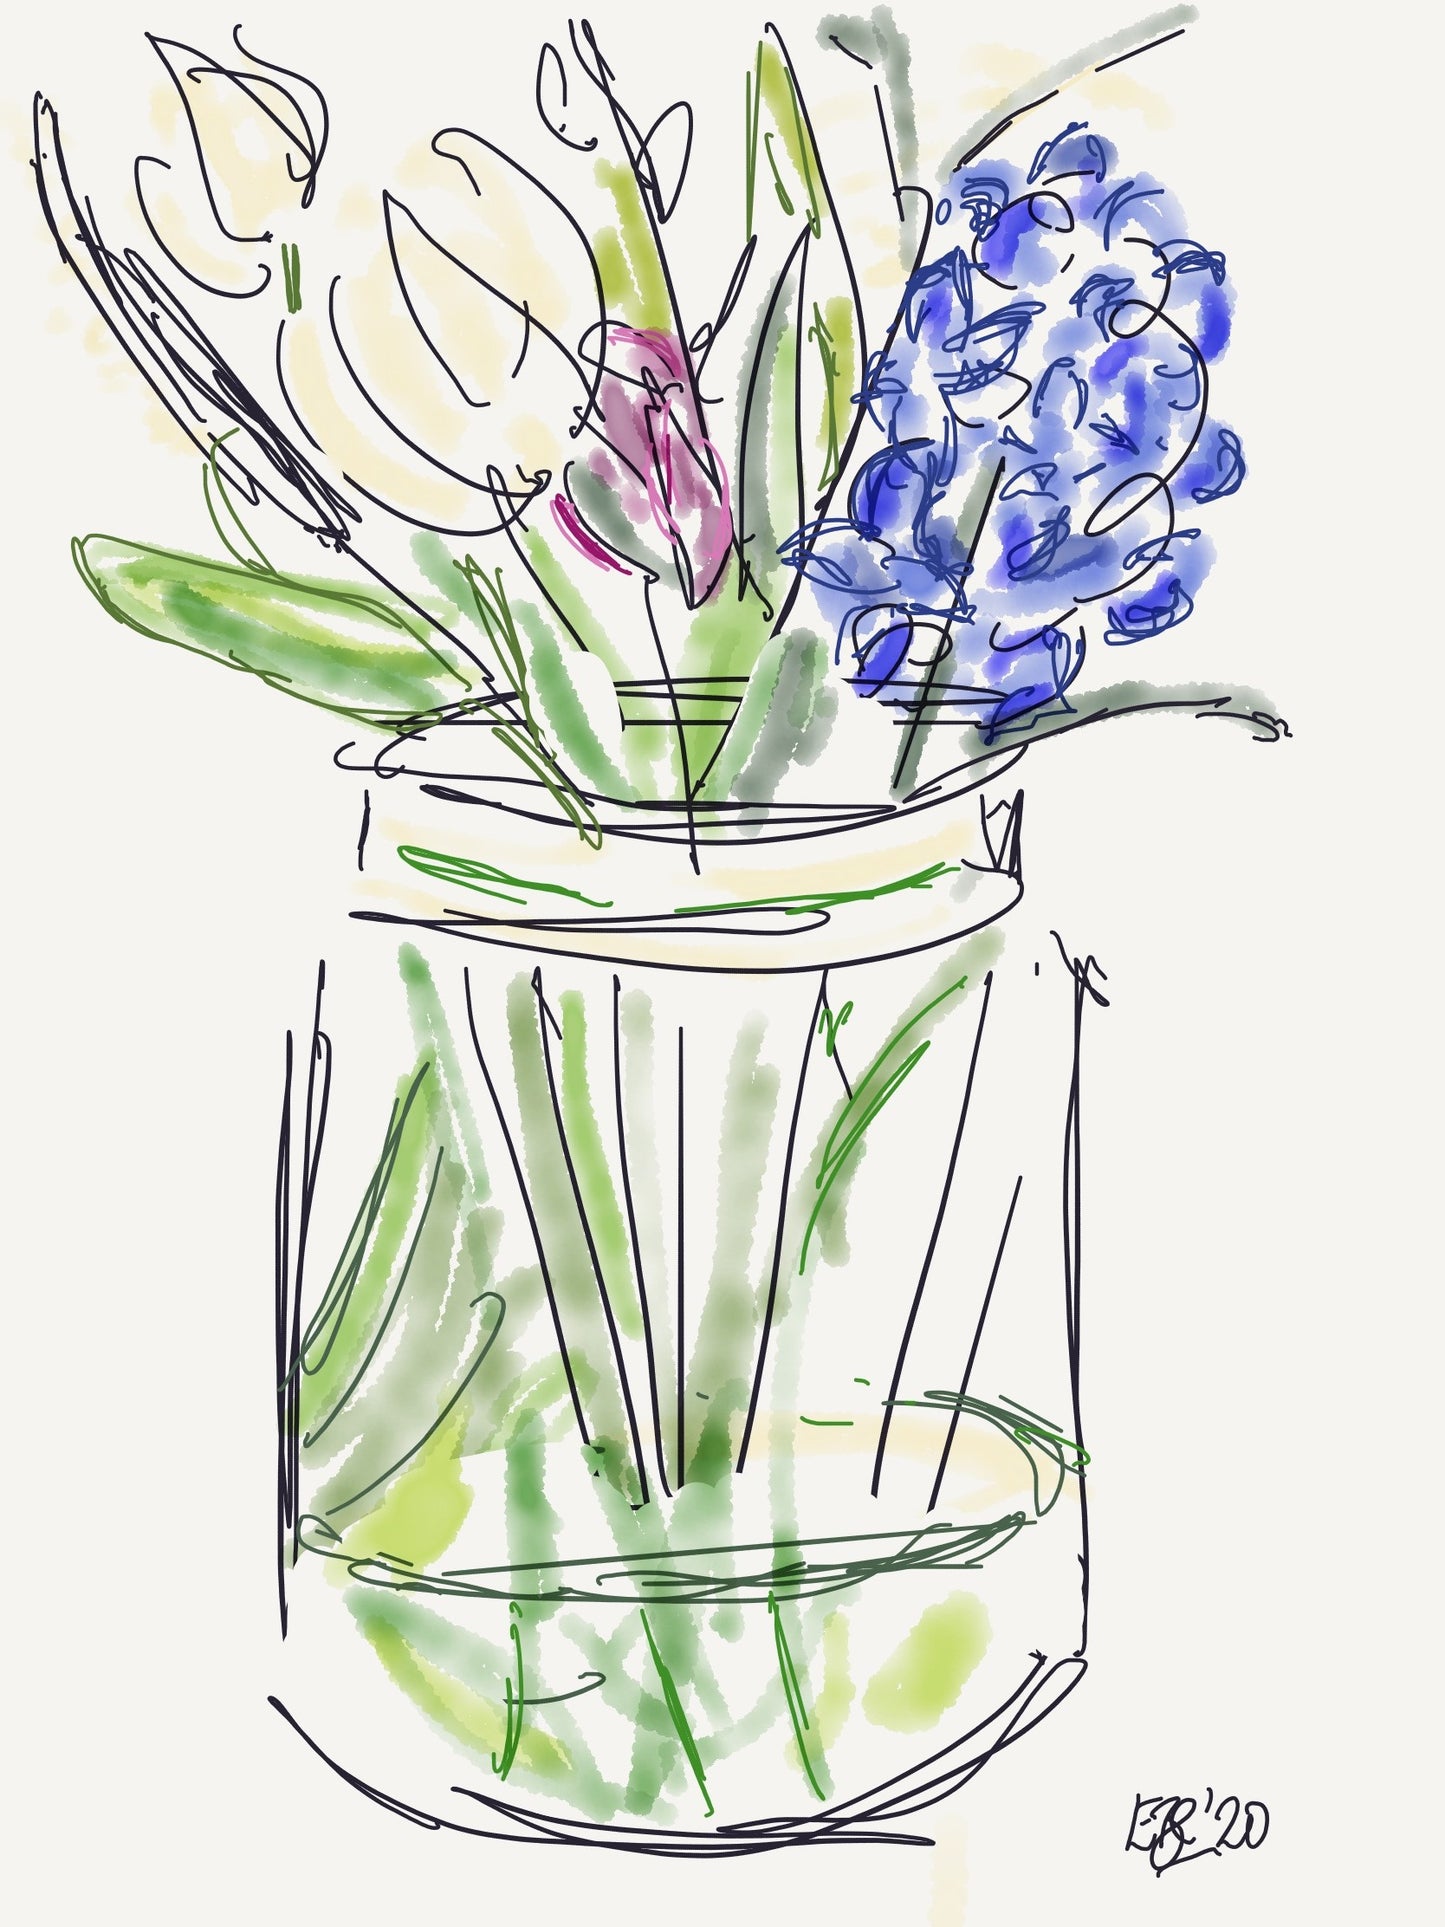 Hyacinths in a Jar - Framed Postcard